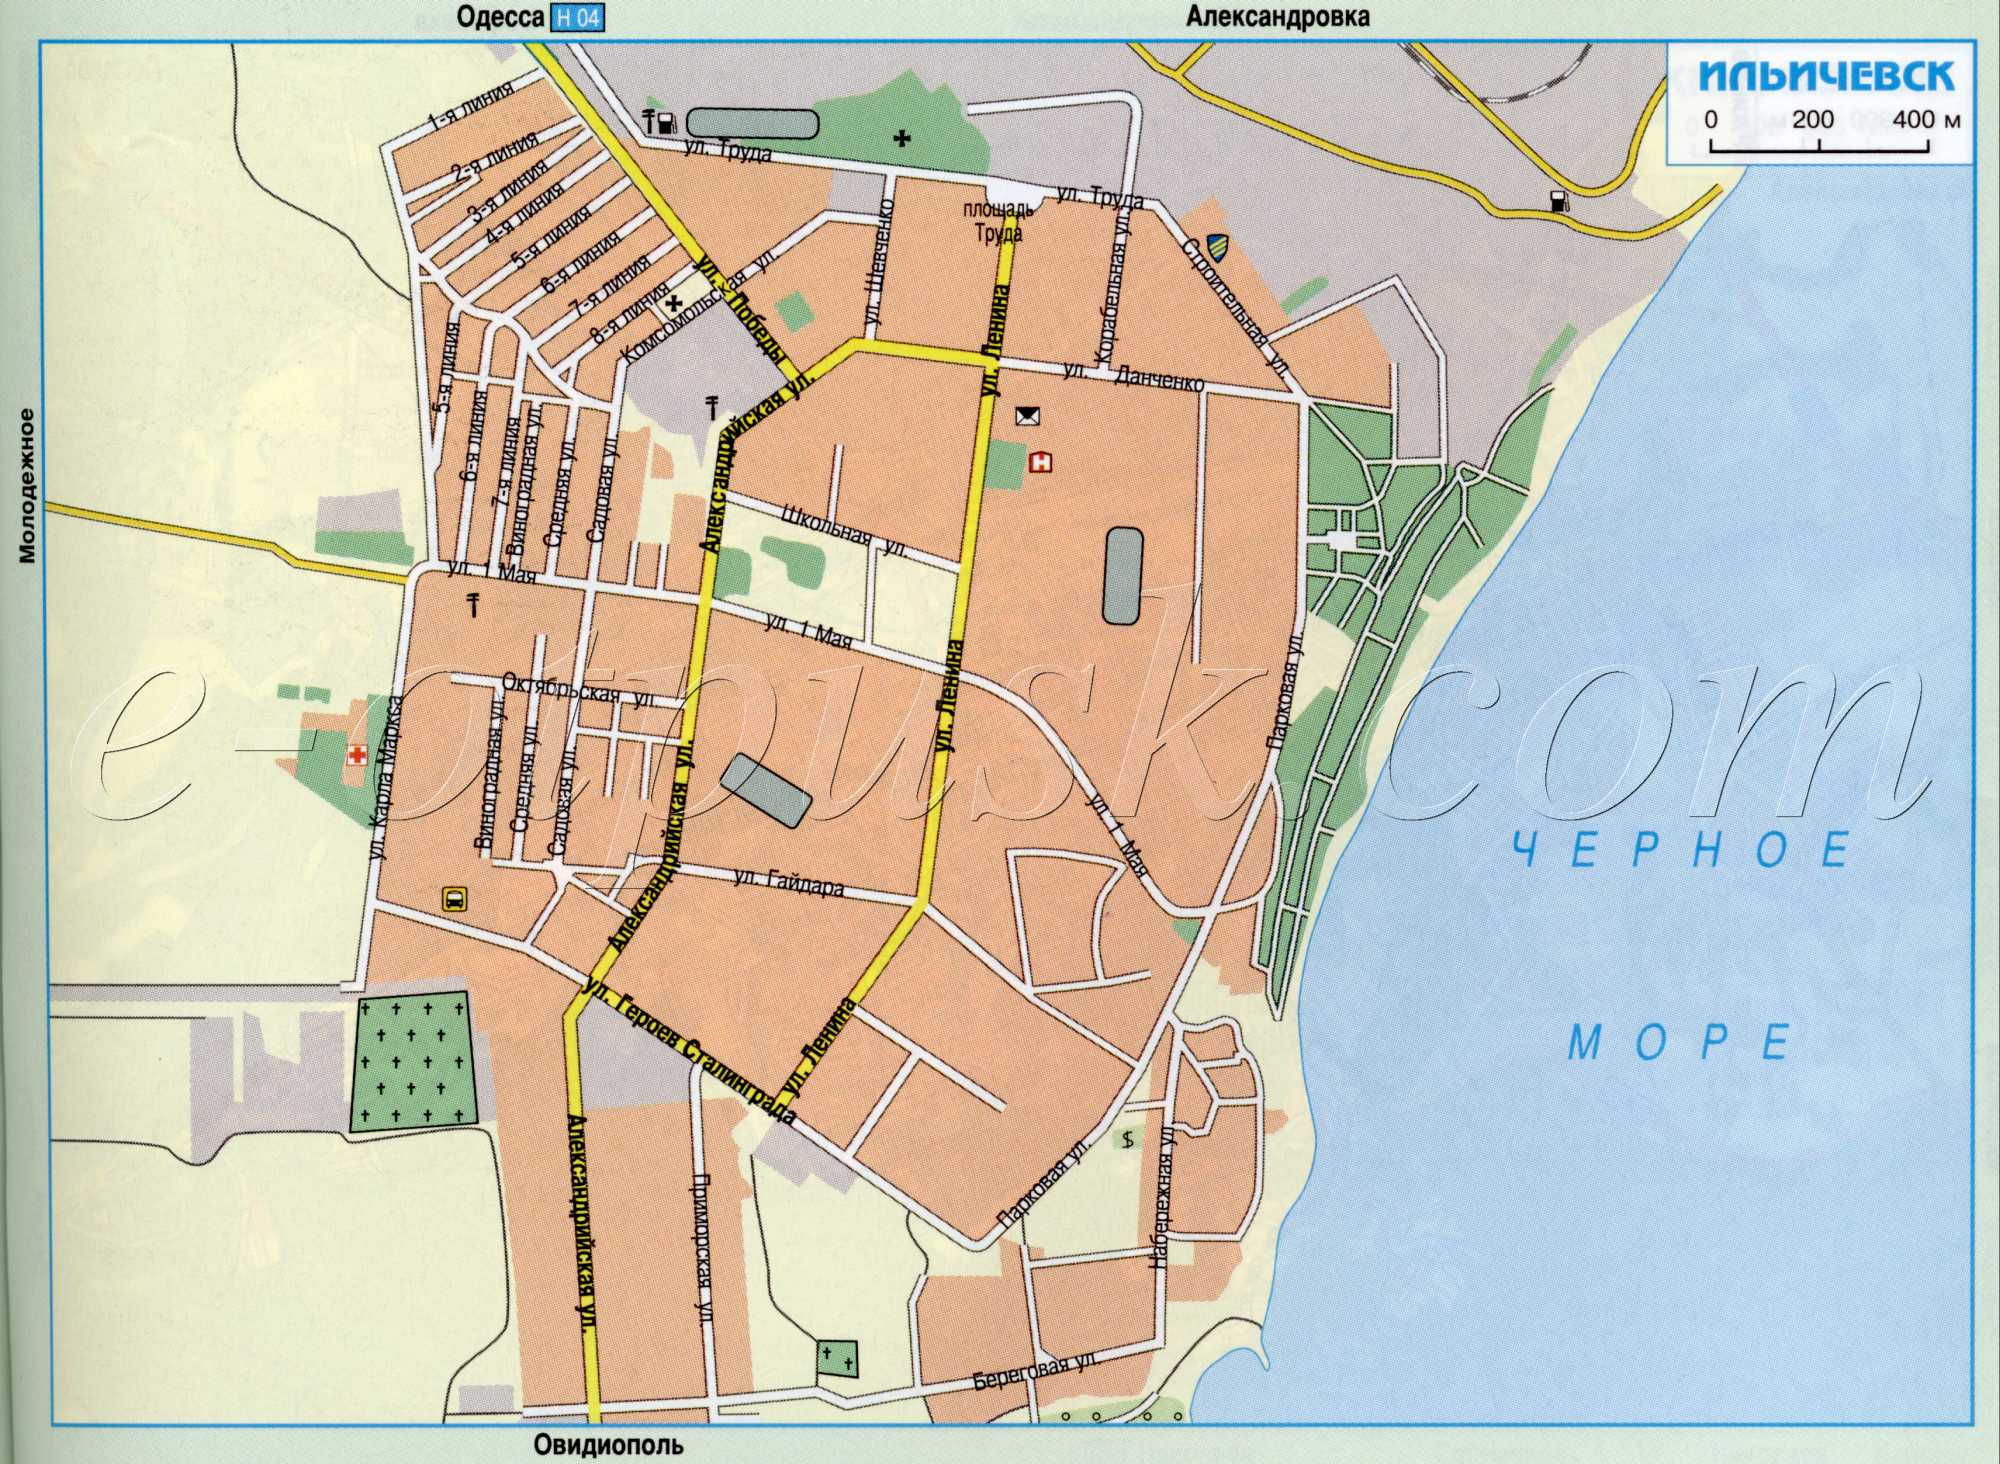 Iljichiovsk Karte. Schematische Karte Richtungen auf Autostraßen Ilyichevsk Region Odessa. kostenlos herunterladen